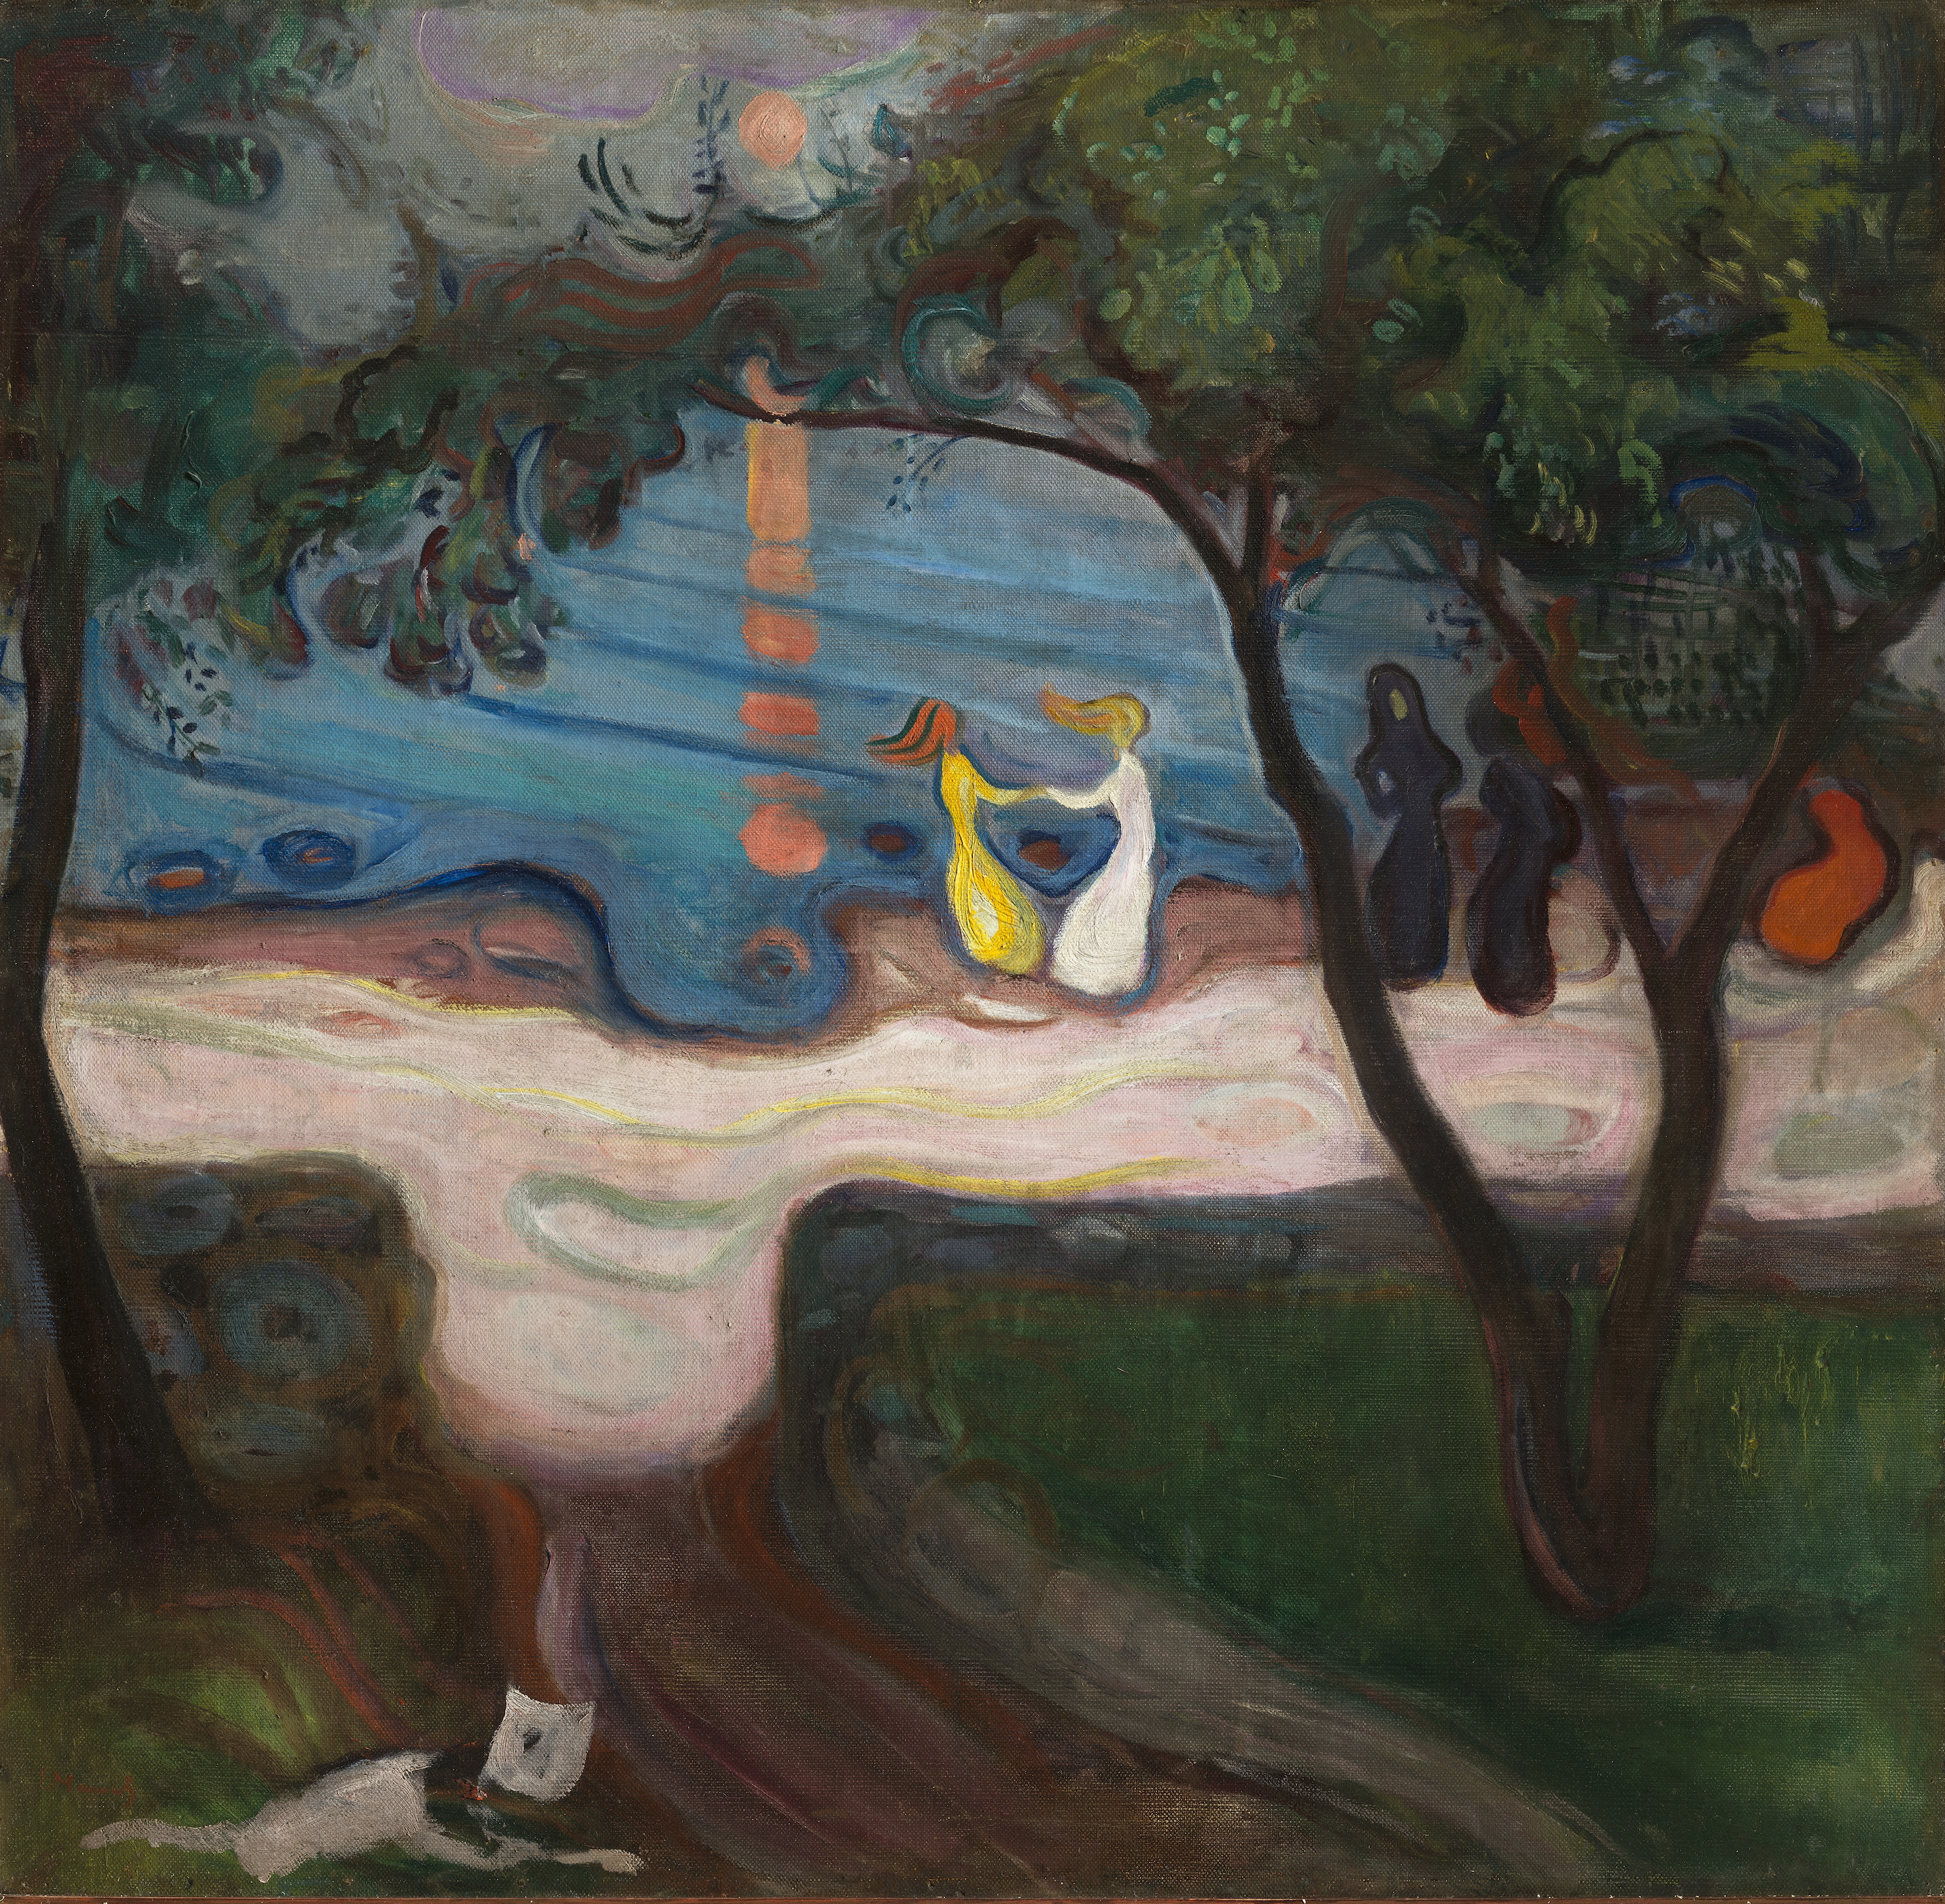 Danse sur le rivage by Edvard Munch - 1900 - 95,5 x 98,5 cm 